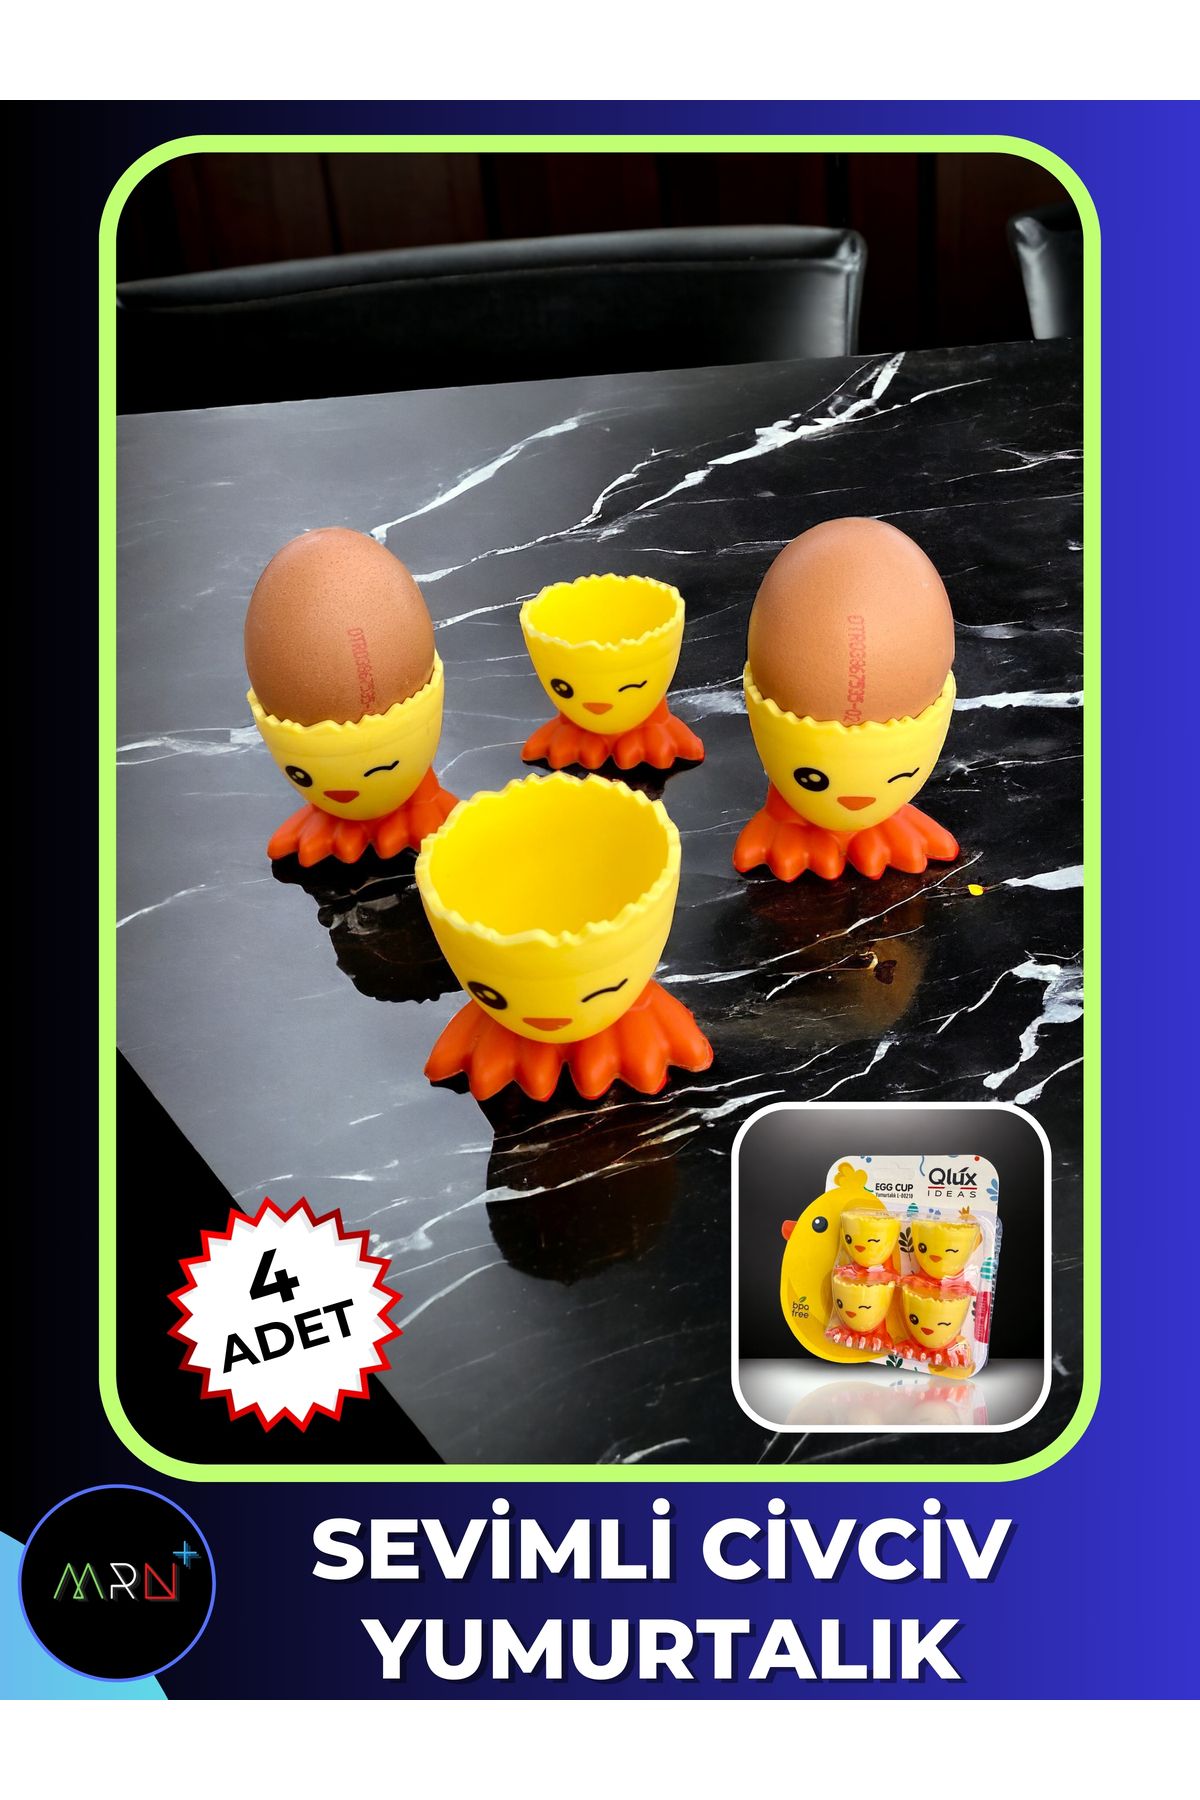 Mirvano 4 Adet Sevimli Civciv Yumurtalık, Çocuk Yumurtalığı, Rafadan Yumurtalık